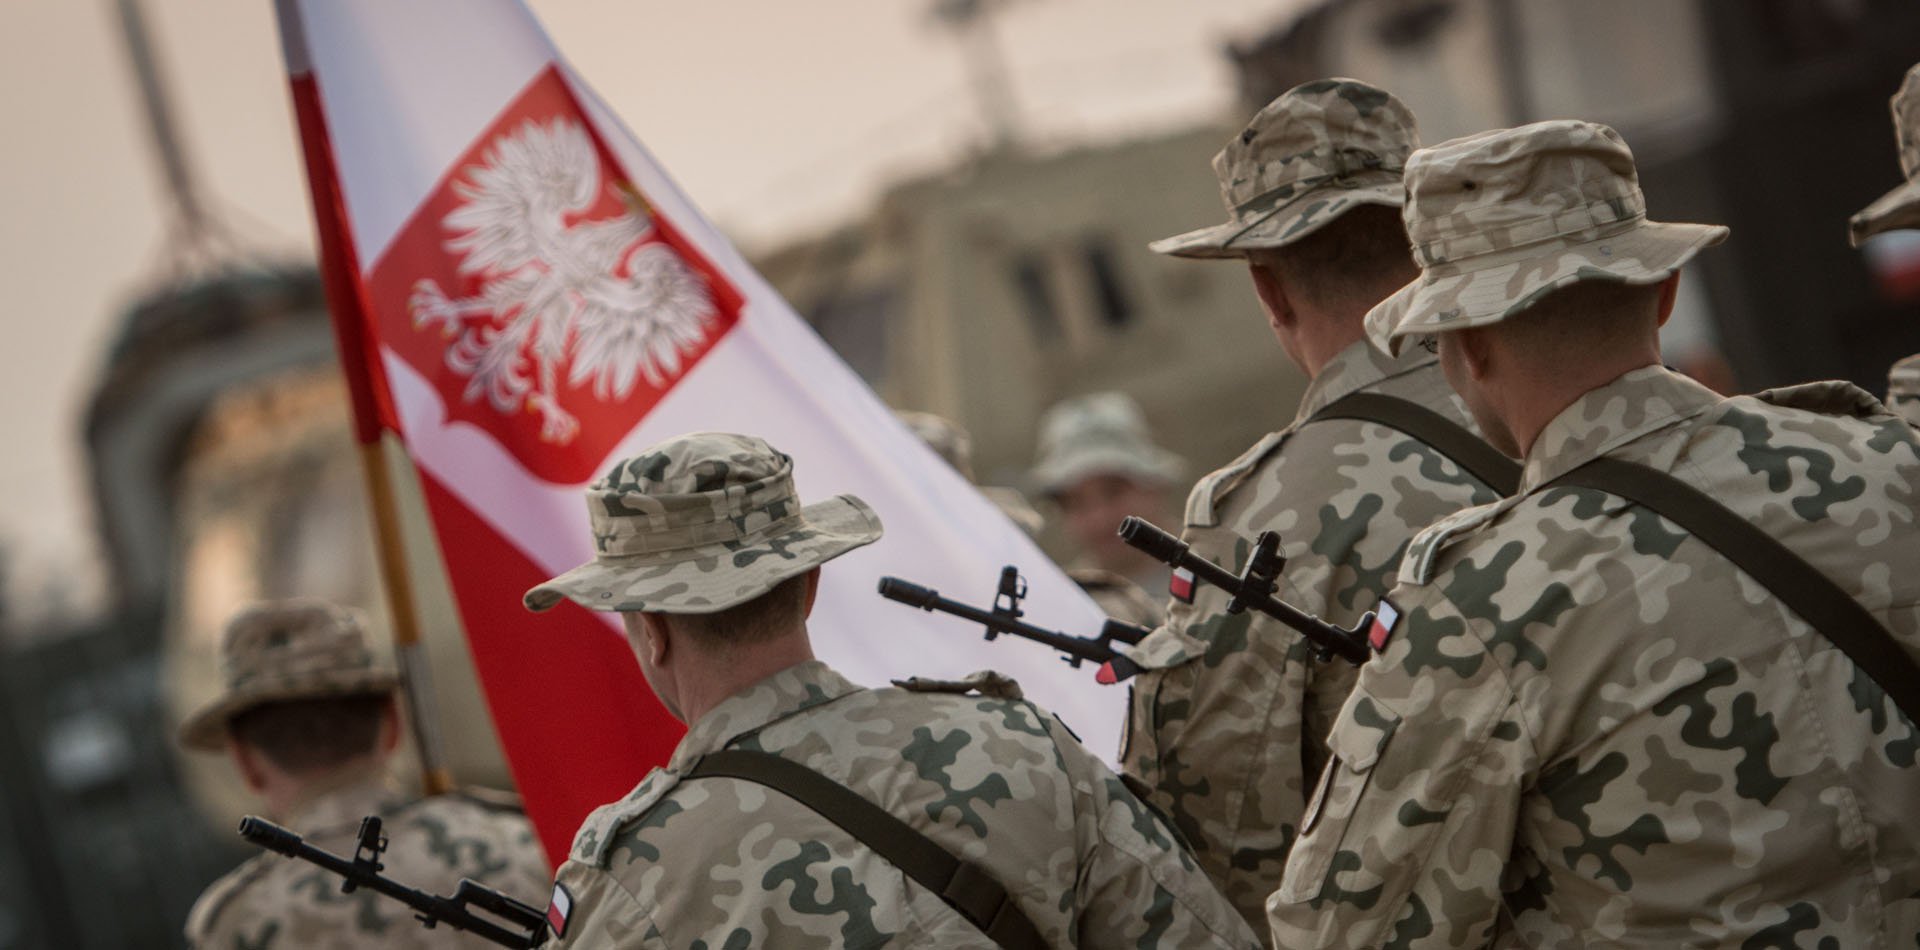 Żołnierze podczas pochodu. Jeden z nich niesie flagę Polski.